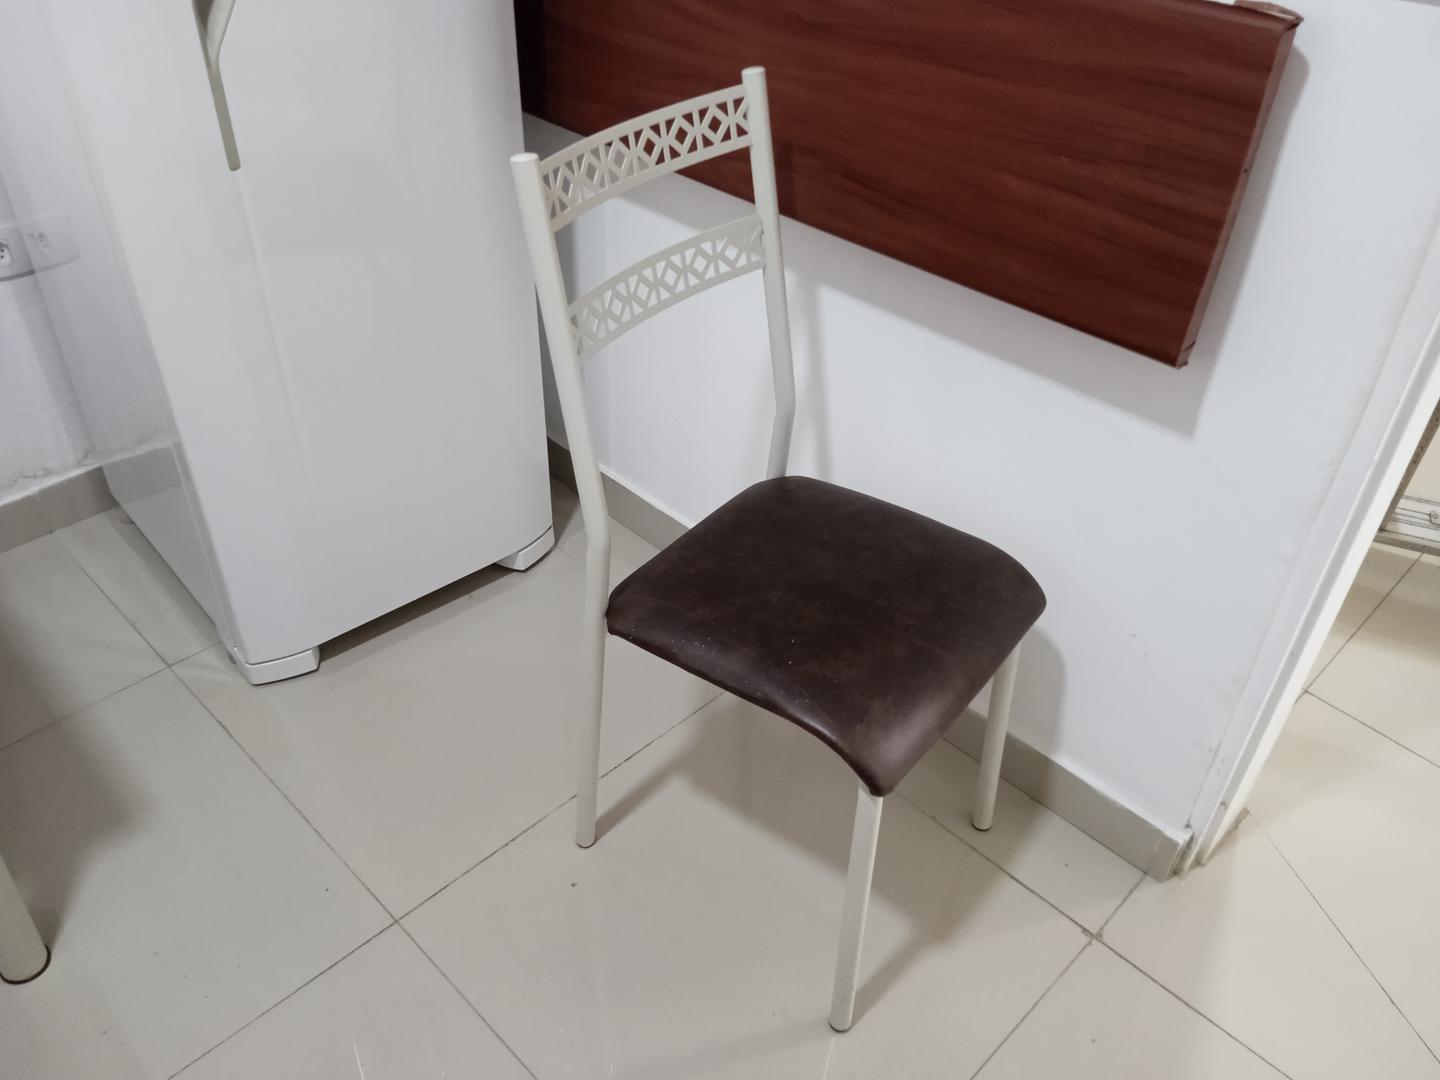 Cadeira fixa estofada s/ braços em Aço / Couro Ecológico Marrom 82 cm x 57 cm x 58 cm